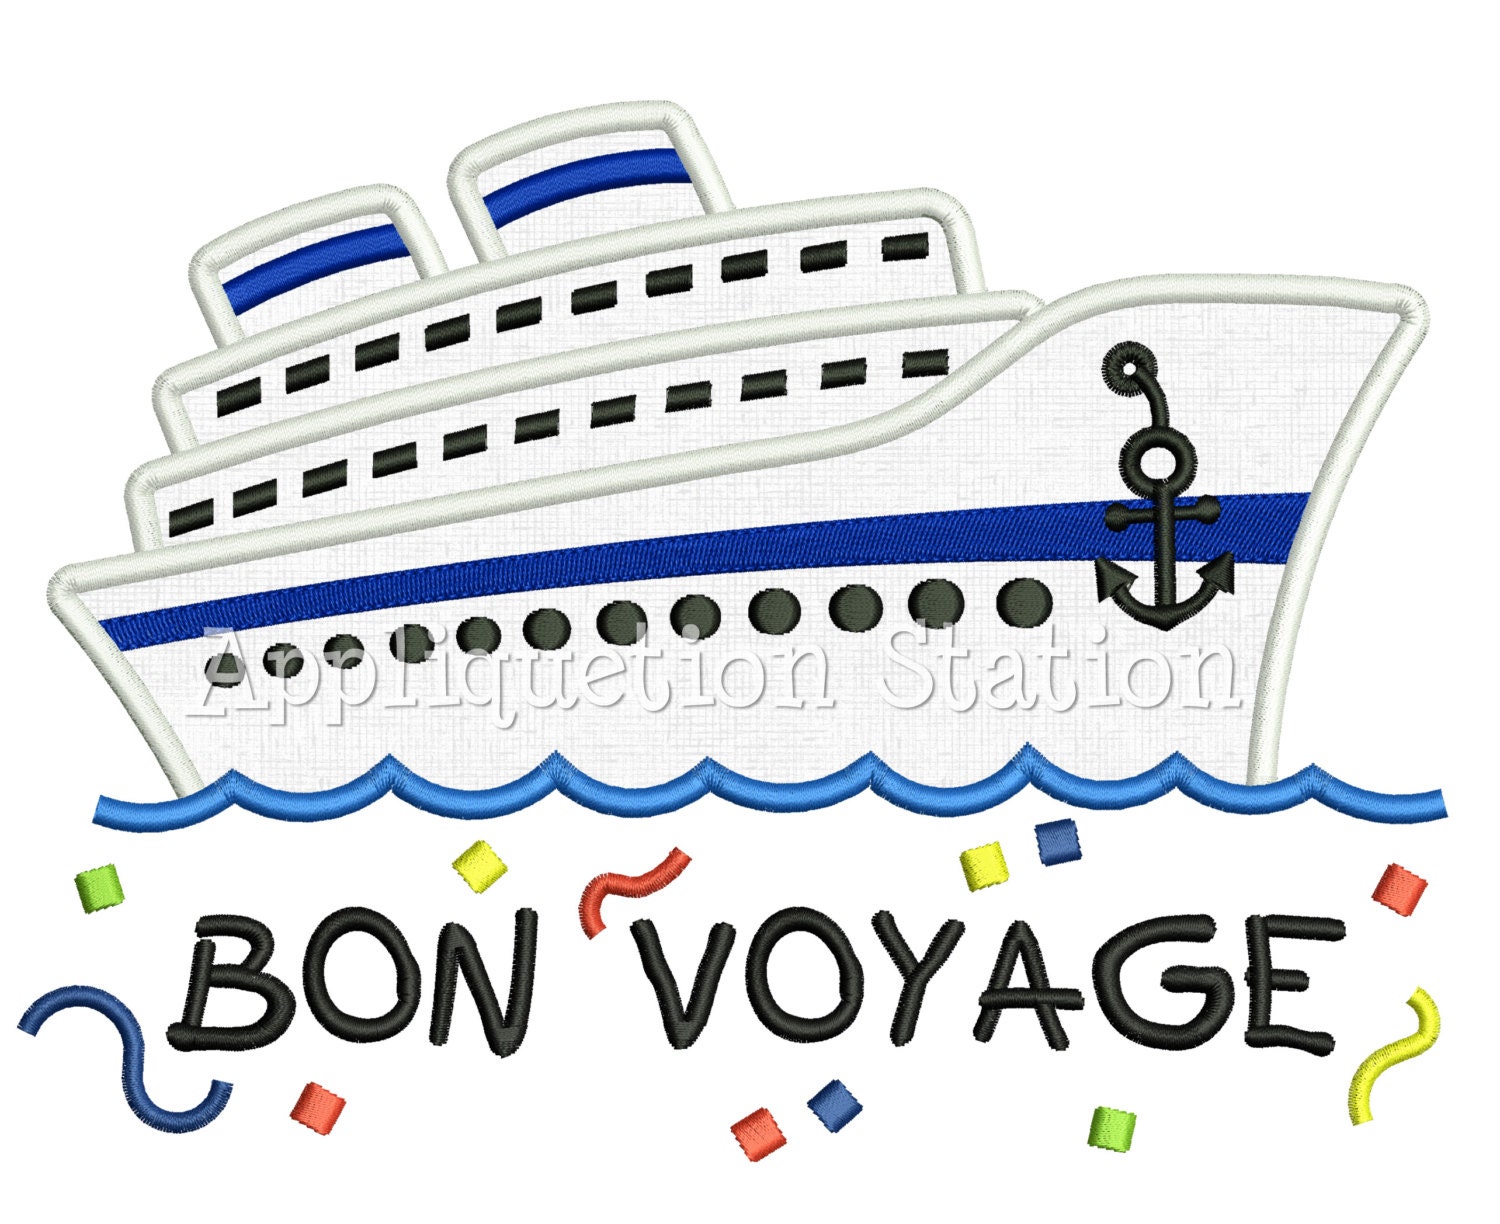 bon voyage boat cruise